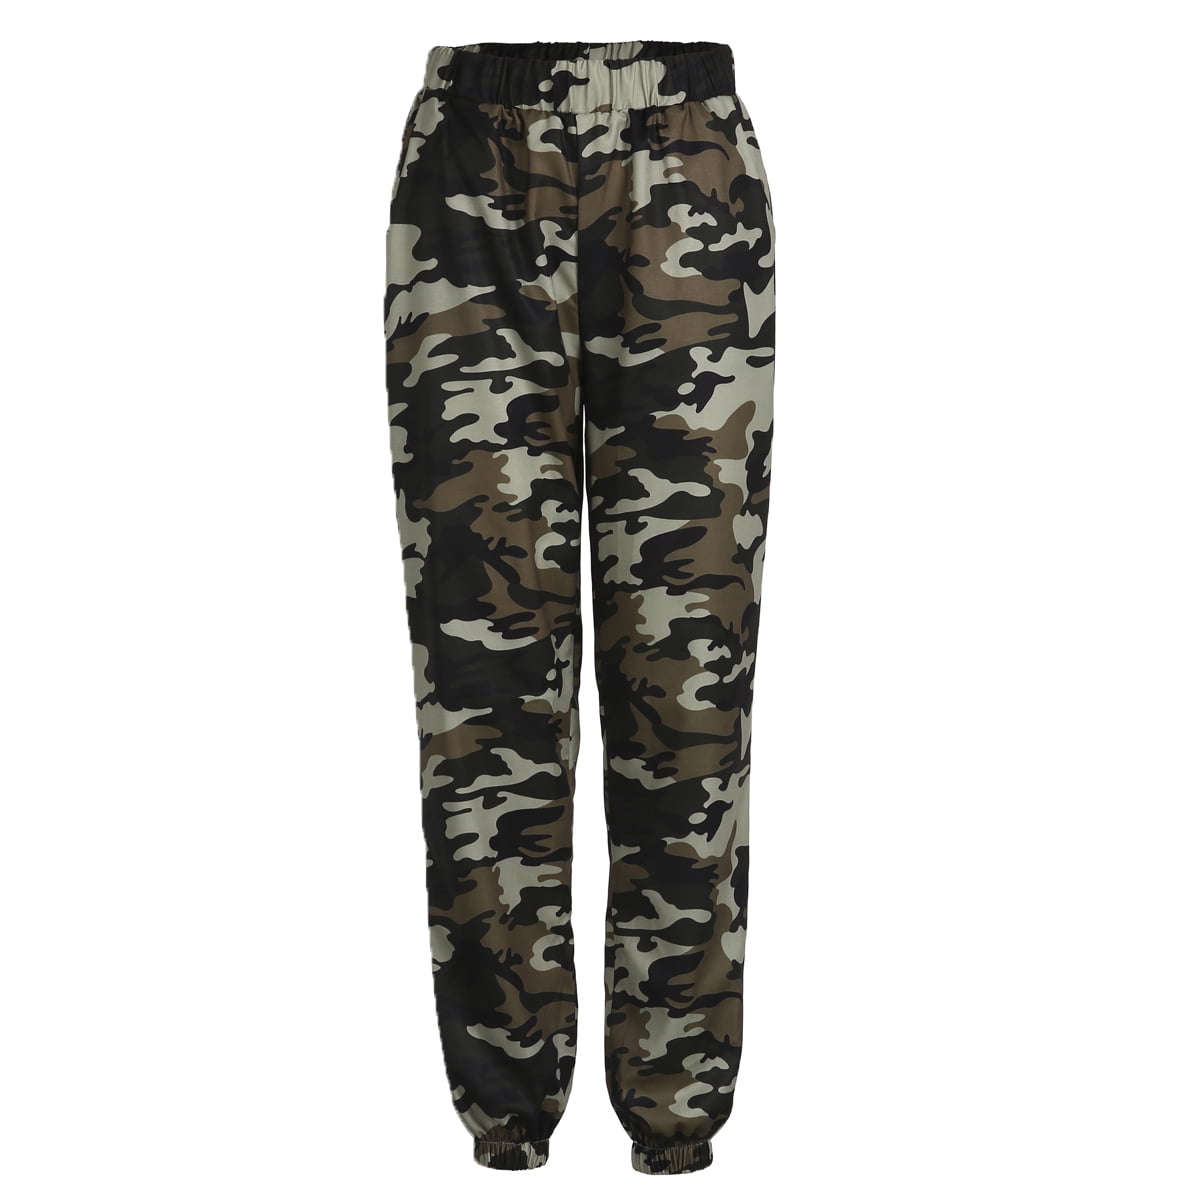 camouflage cargo pants walmart